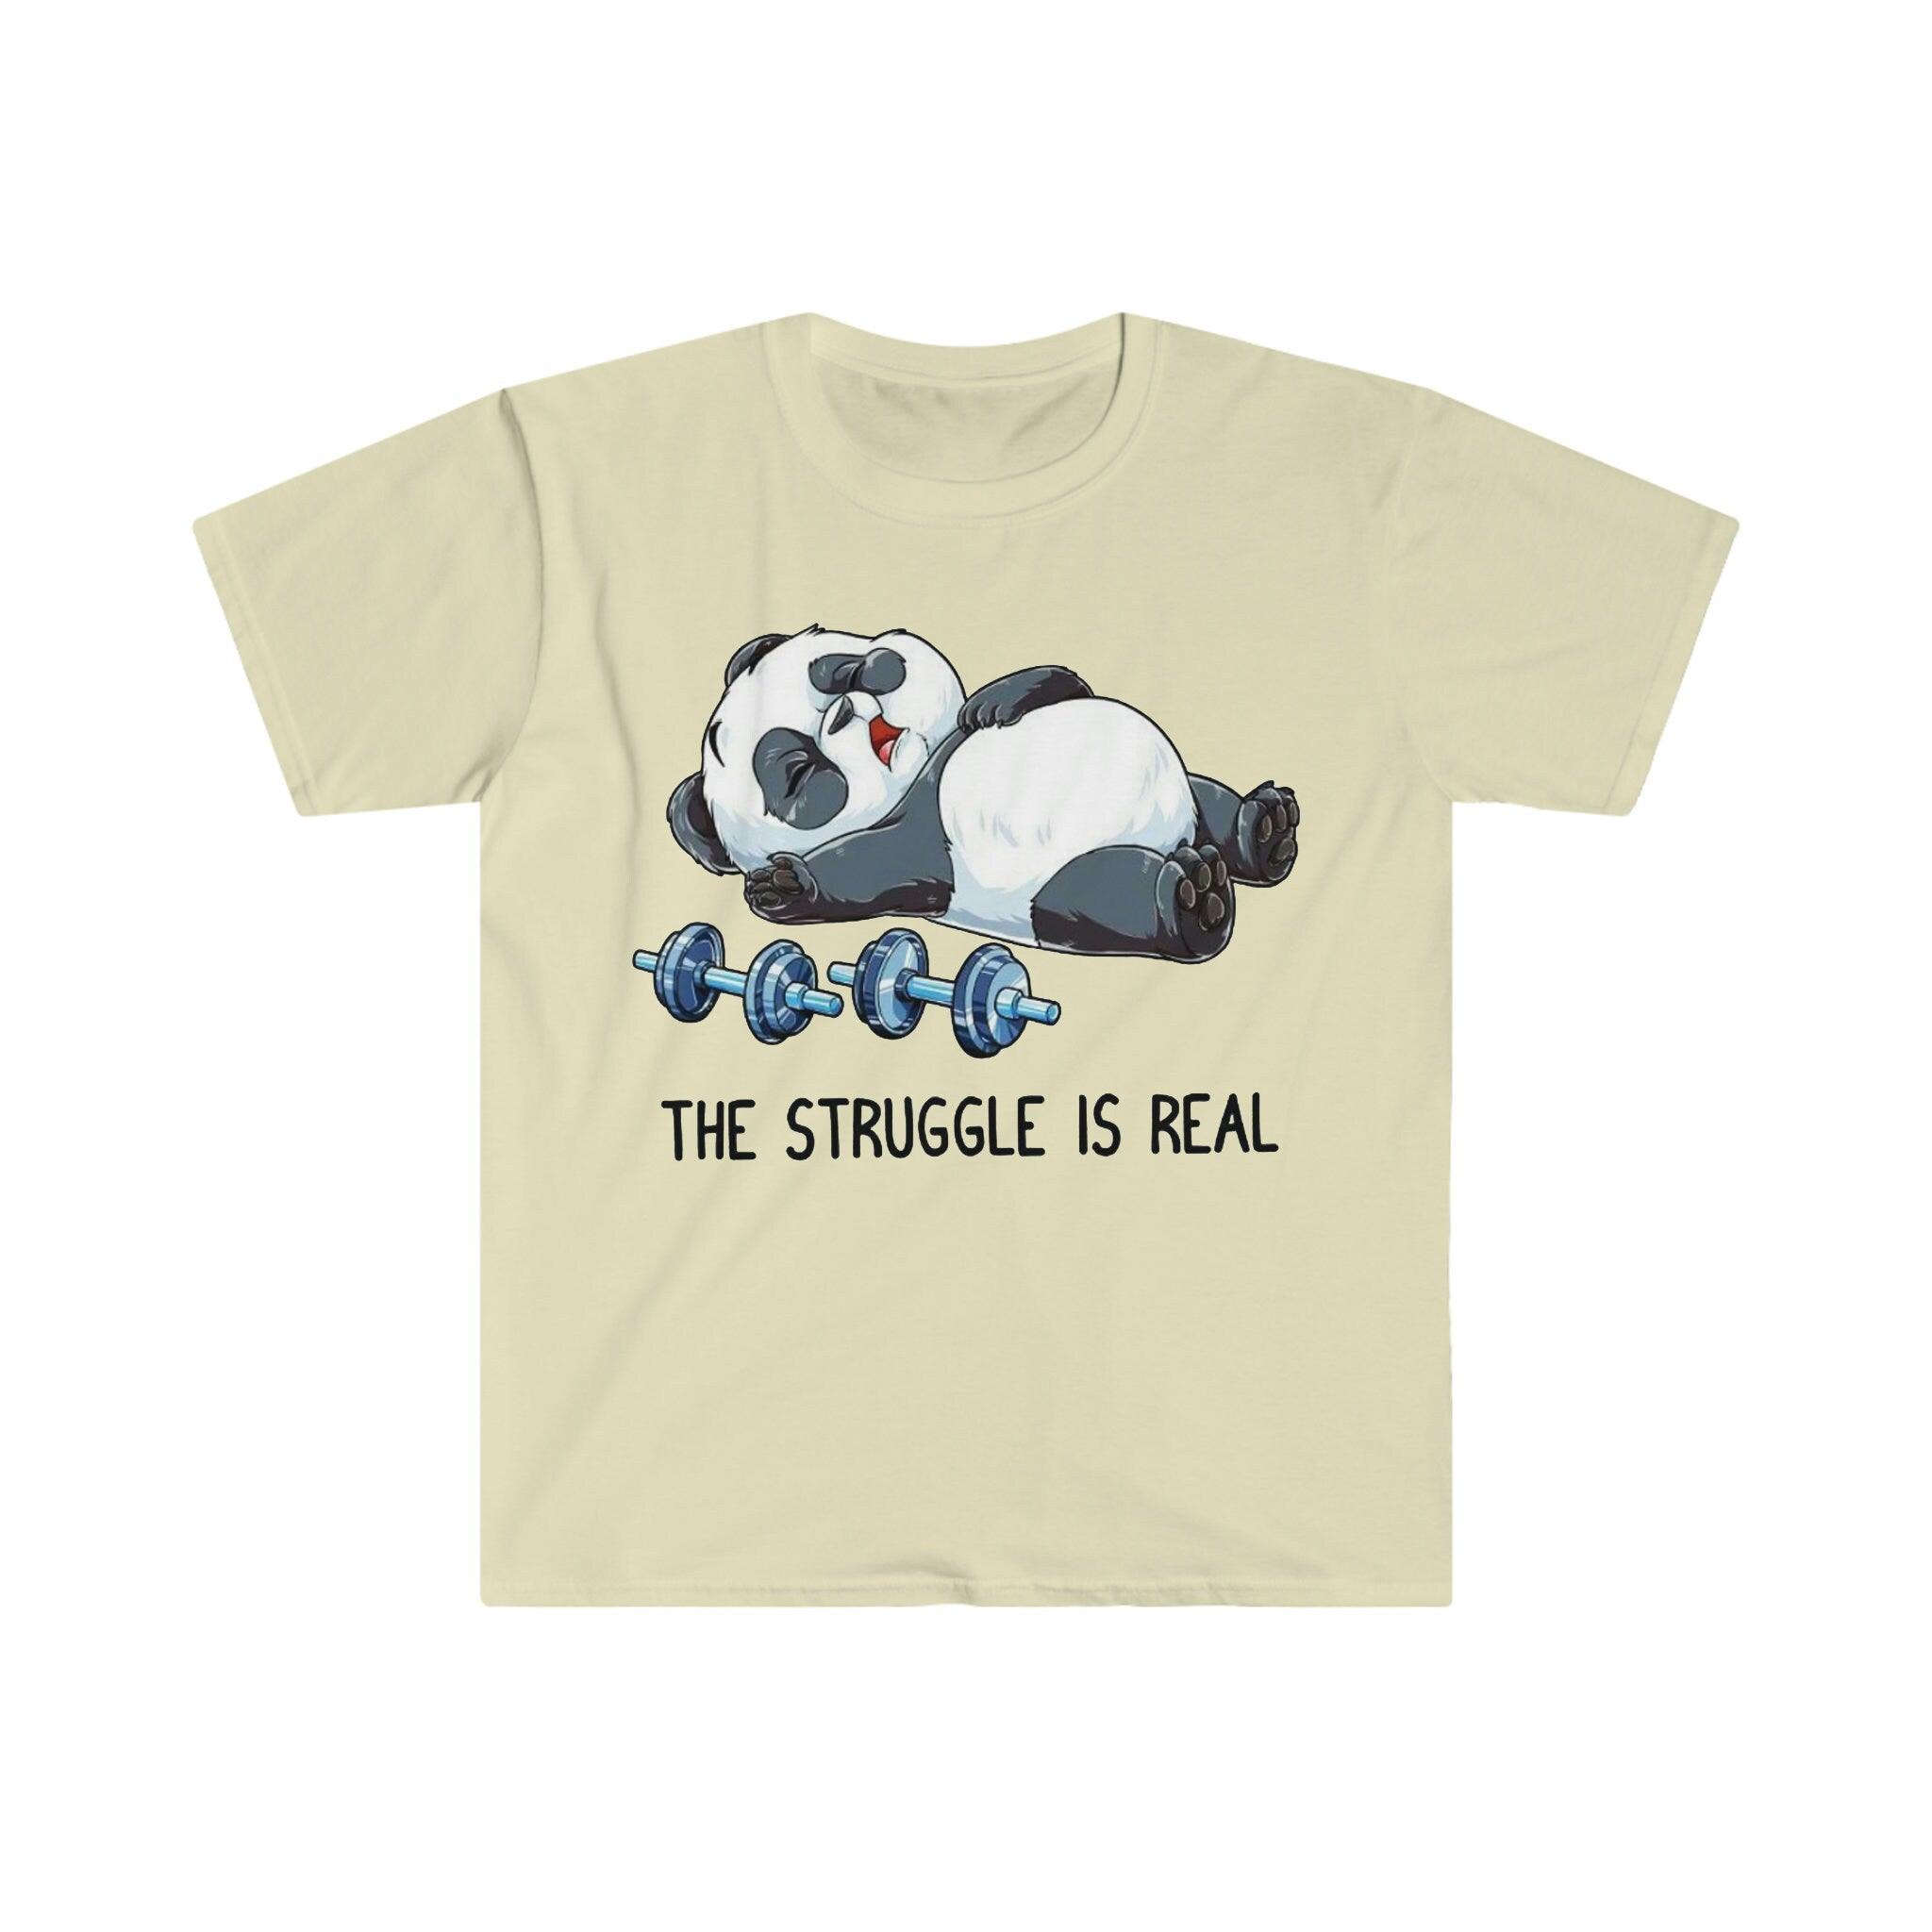 Футболкі для цяжкай атлетыкі The Struggle Is Real Panda, смешная футболка для цяжкай атлетыкі ў трэнажорнай зале, кашуля для трэніровак, кашуля для фітнесу Beast mode weight, смешны фітнес, трэнажорная зала, фітнес-кашуля, смешная саркастычная гімнастыка, смешная футболка, футболка для трэніровак у трэнажорнай зале, панда барацьба, барацьба сапраўдная, футболка, футболкі, цяжкая атлетыка, панда для цяжкай атлетыкі, футболка для цяжкай атлетыкі, кашуля для трэніровак - plusminusco.com